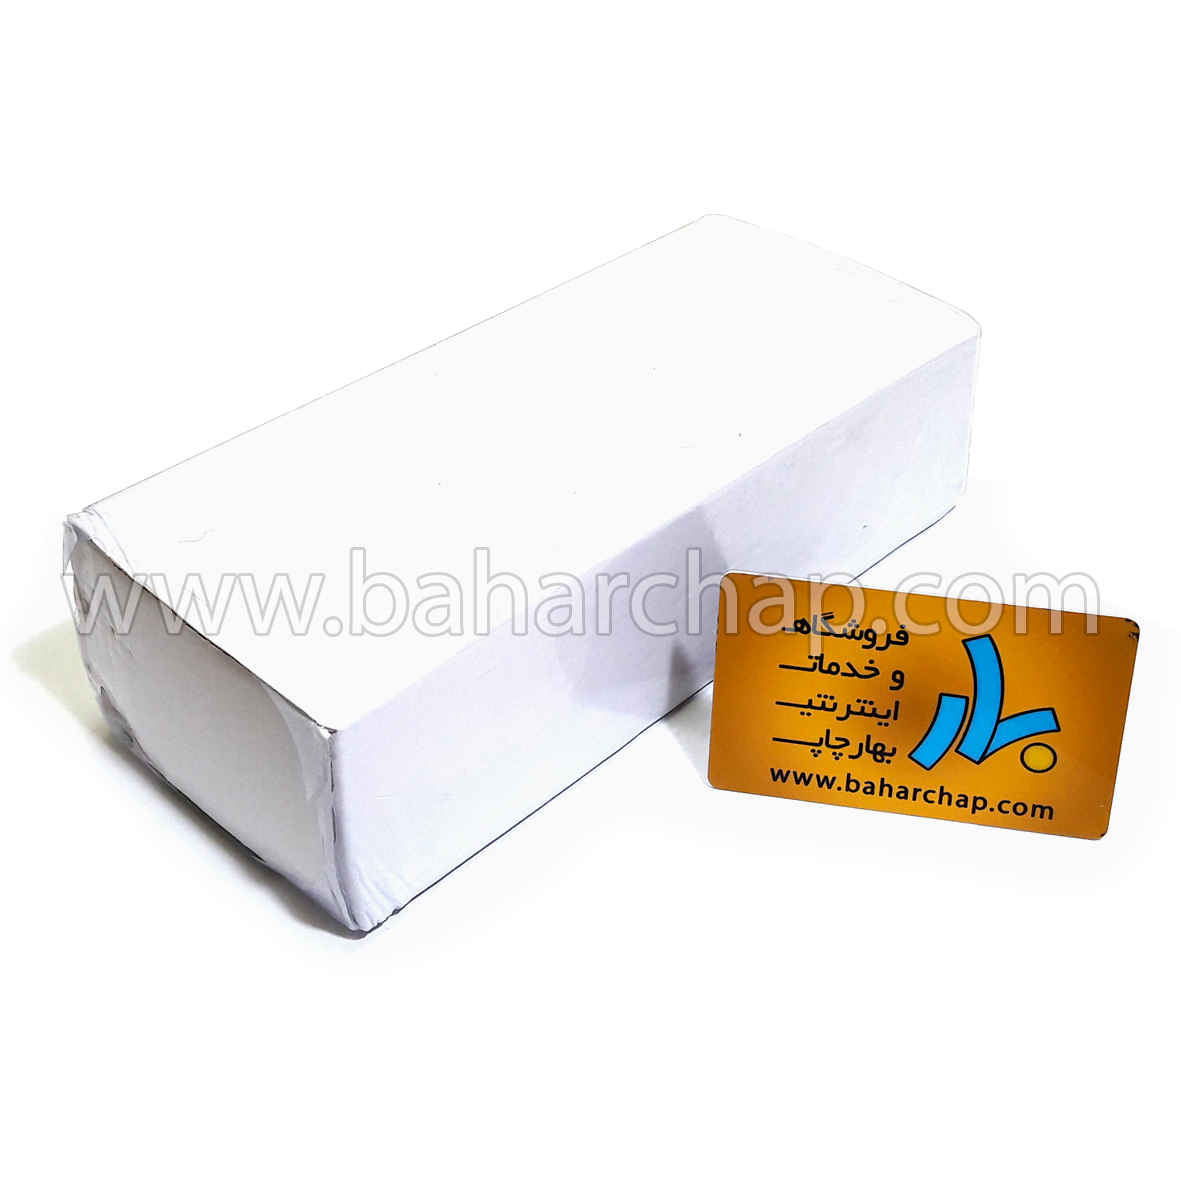 فروشگاه و خدمات اینترنتی بهارچاپ اصفهان-کارت PVC خام جوهر افشان (براق)-PVC card try FOR EPSON INKJET